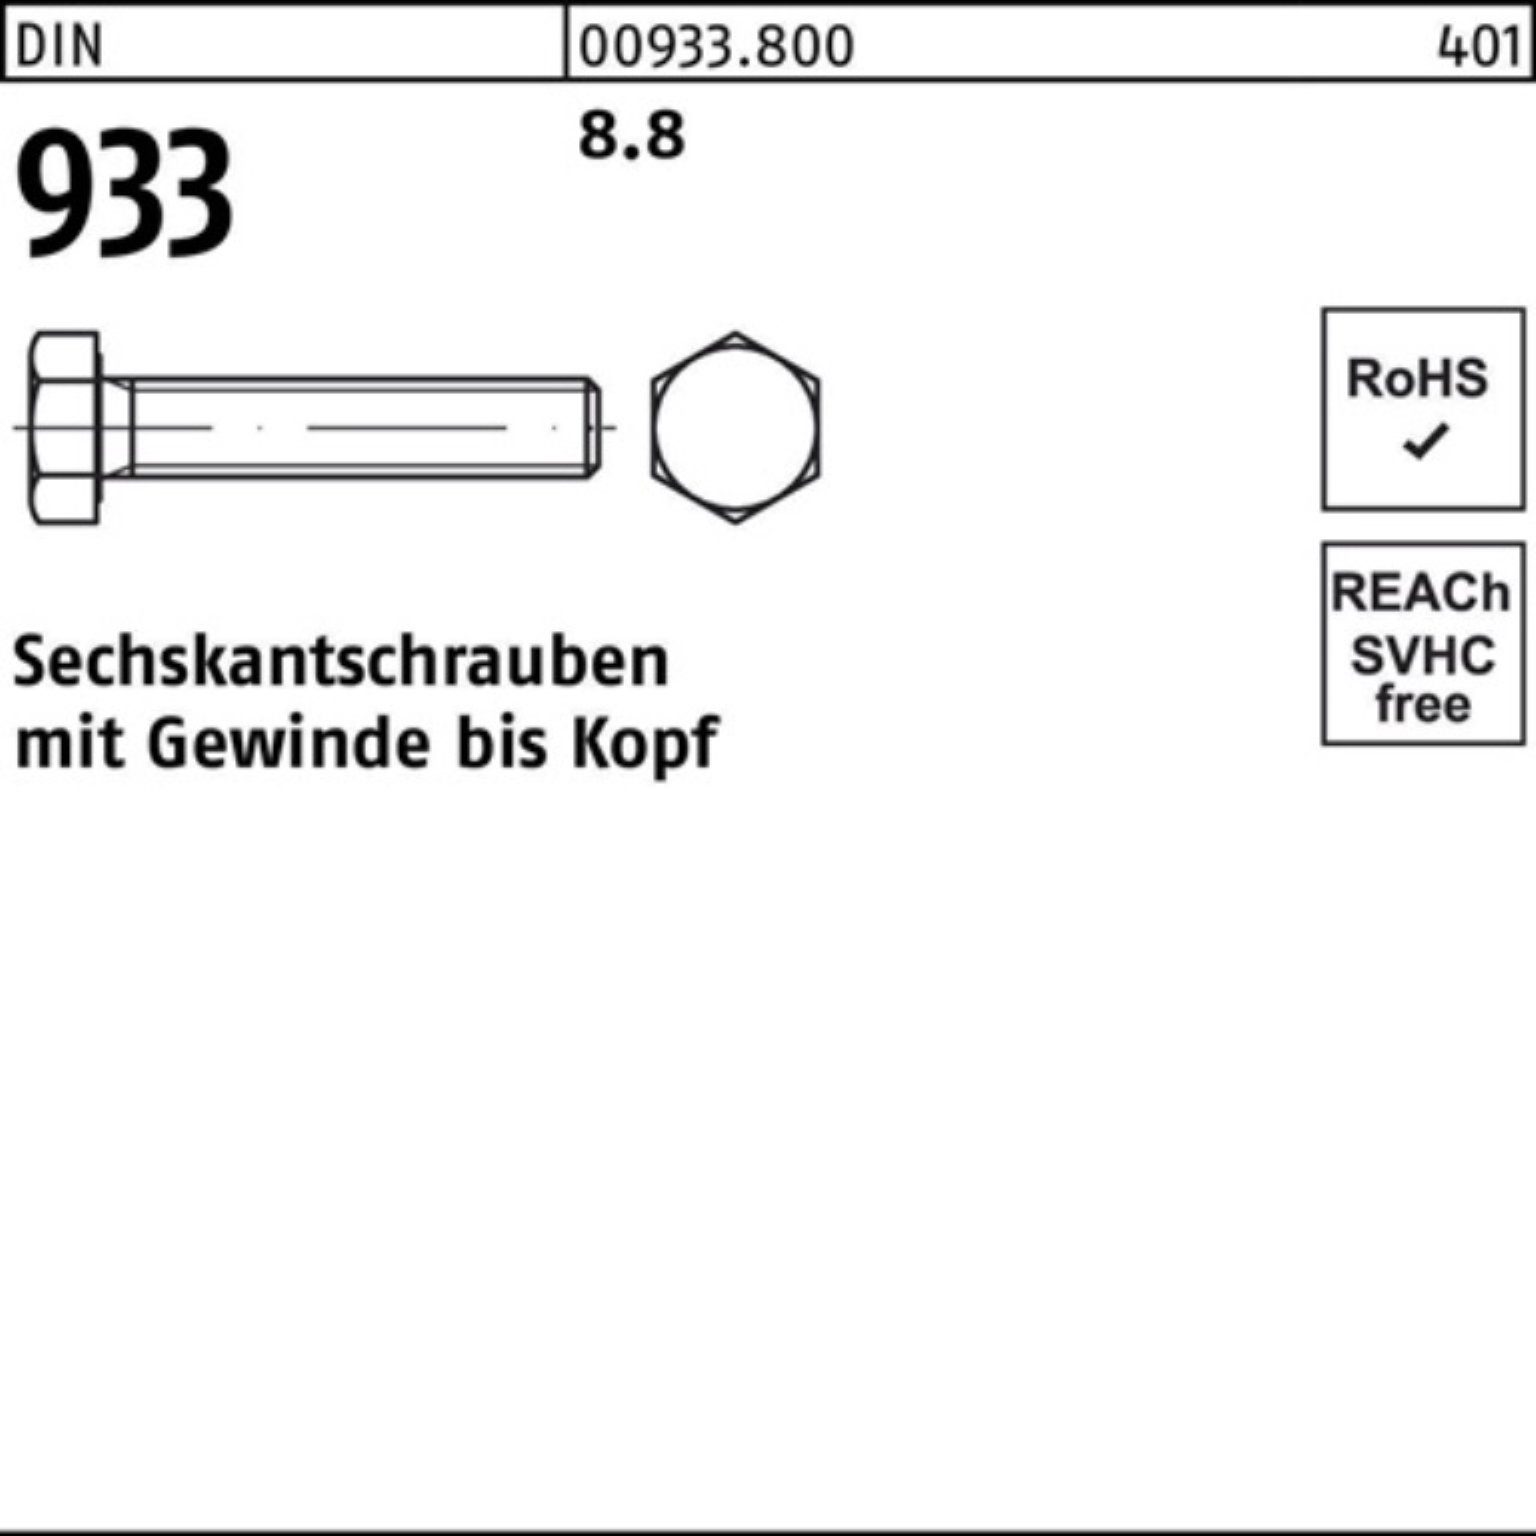 DIN 18 500er M4x DIN 500 VG Reyher Sechskantschraube 933 Stück Pack 8.8 Sechskantschraube 933